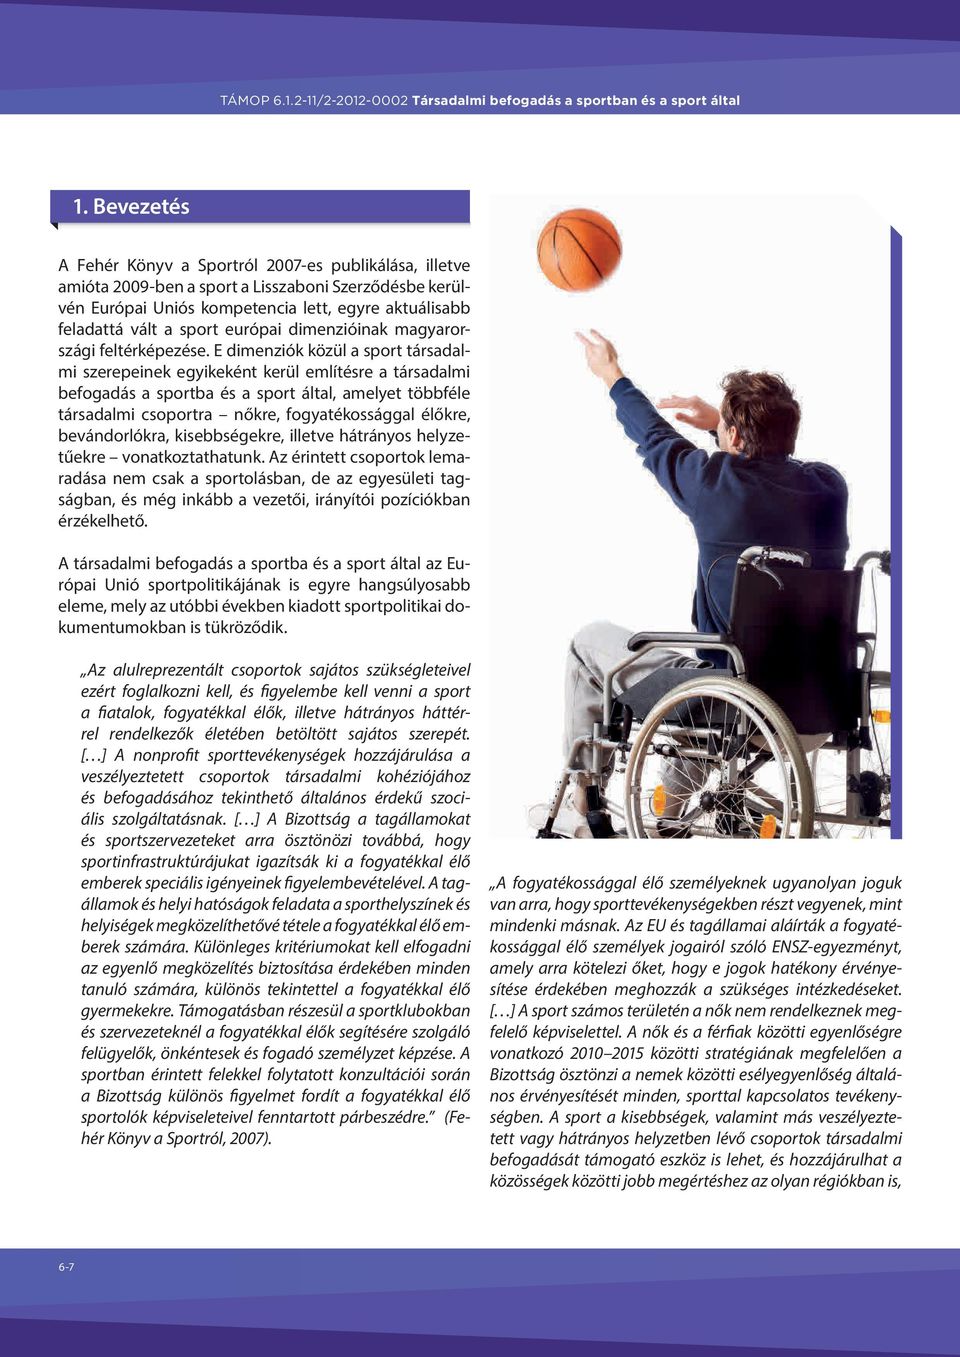 E dimenziók közül a sport társadalmi szerepeinek egyikeként kerül említésre a társadalmi befogadás a sportba és a sport által, amelyet többféle társadalmi csoportra nőkre, fogyatékossággal élőkre,